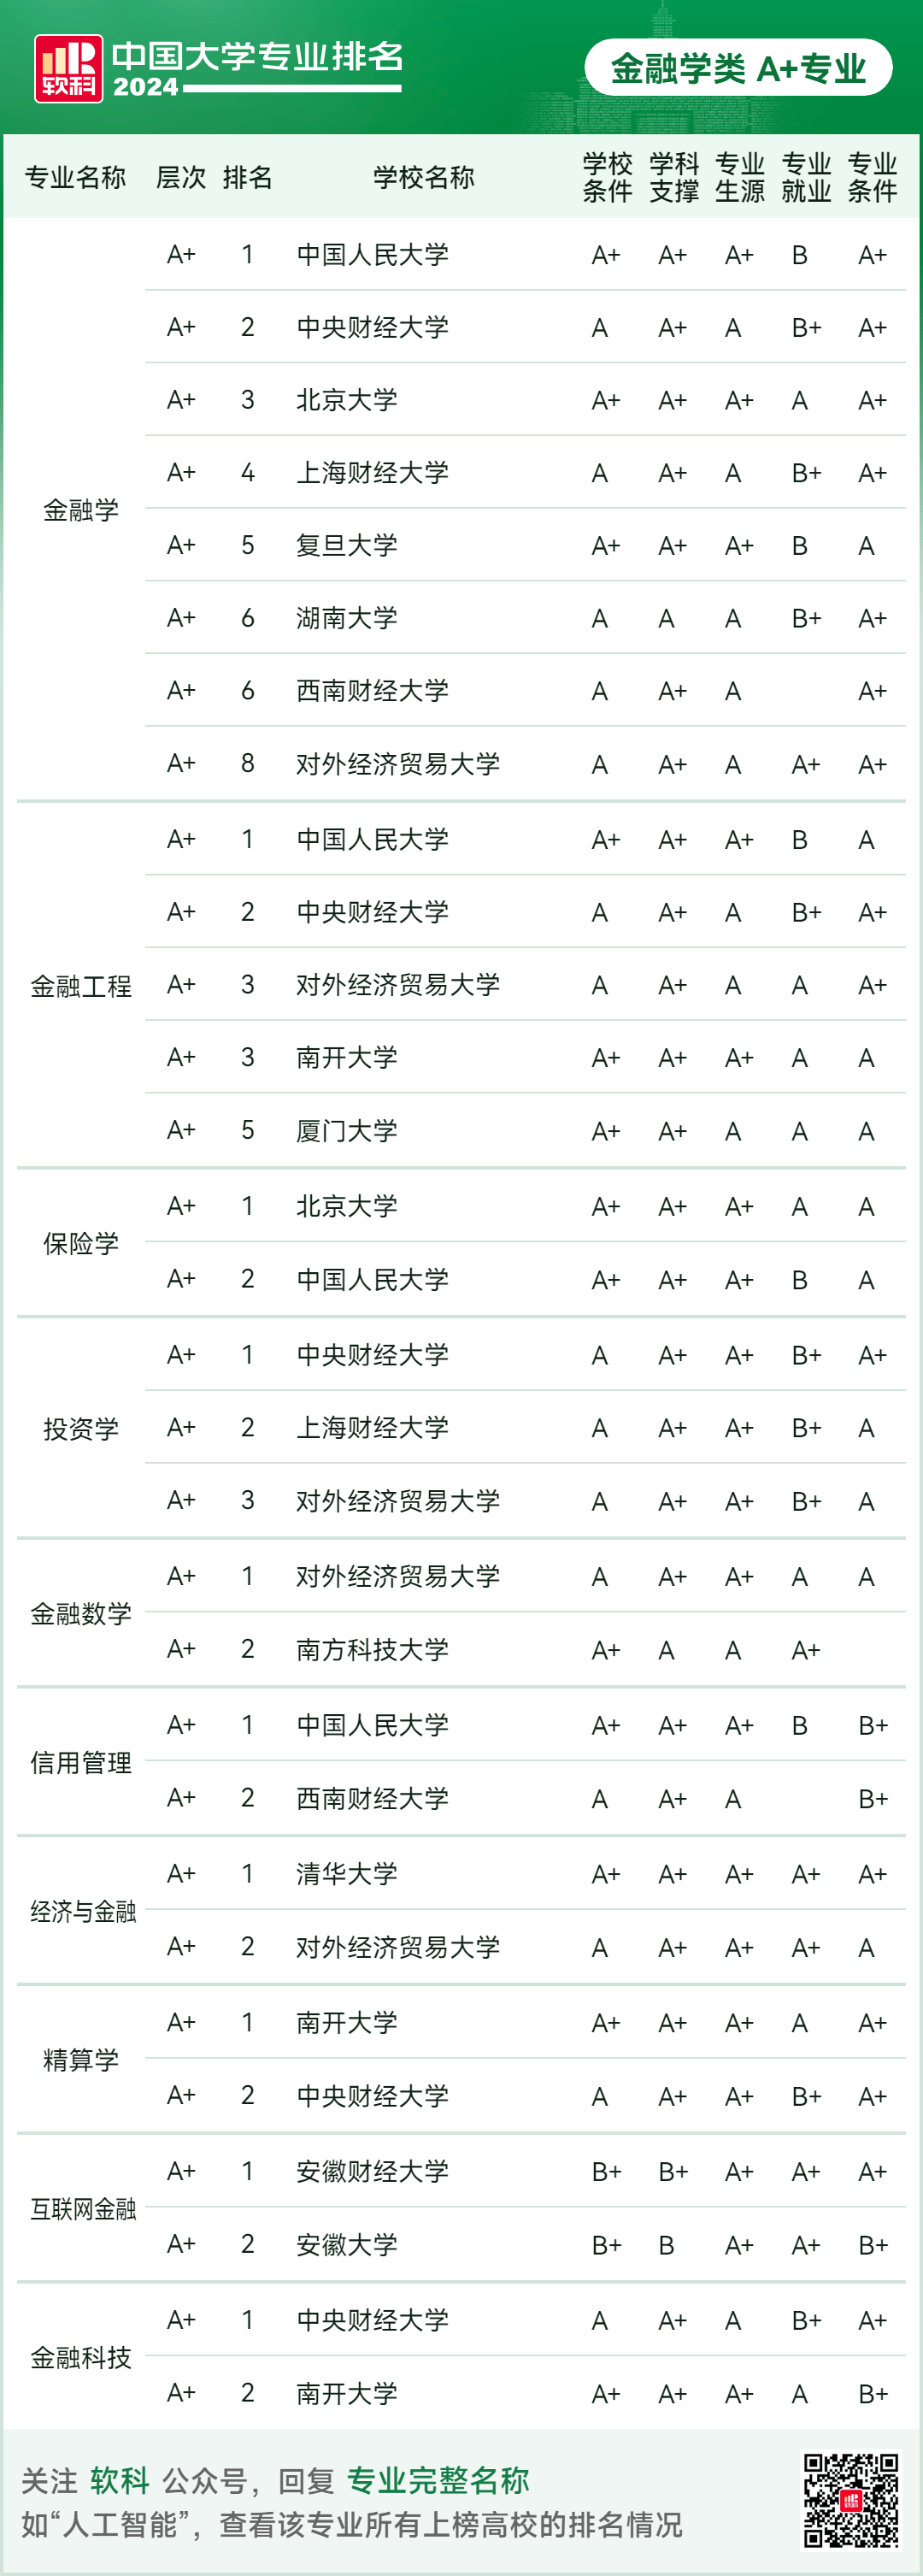 综合性大学中,北京大学和清华大学分别以794%和76